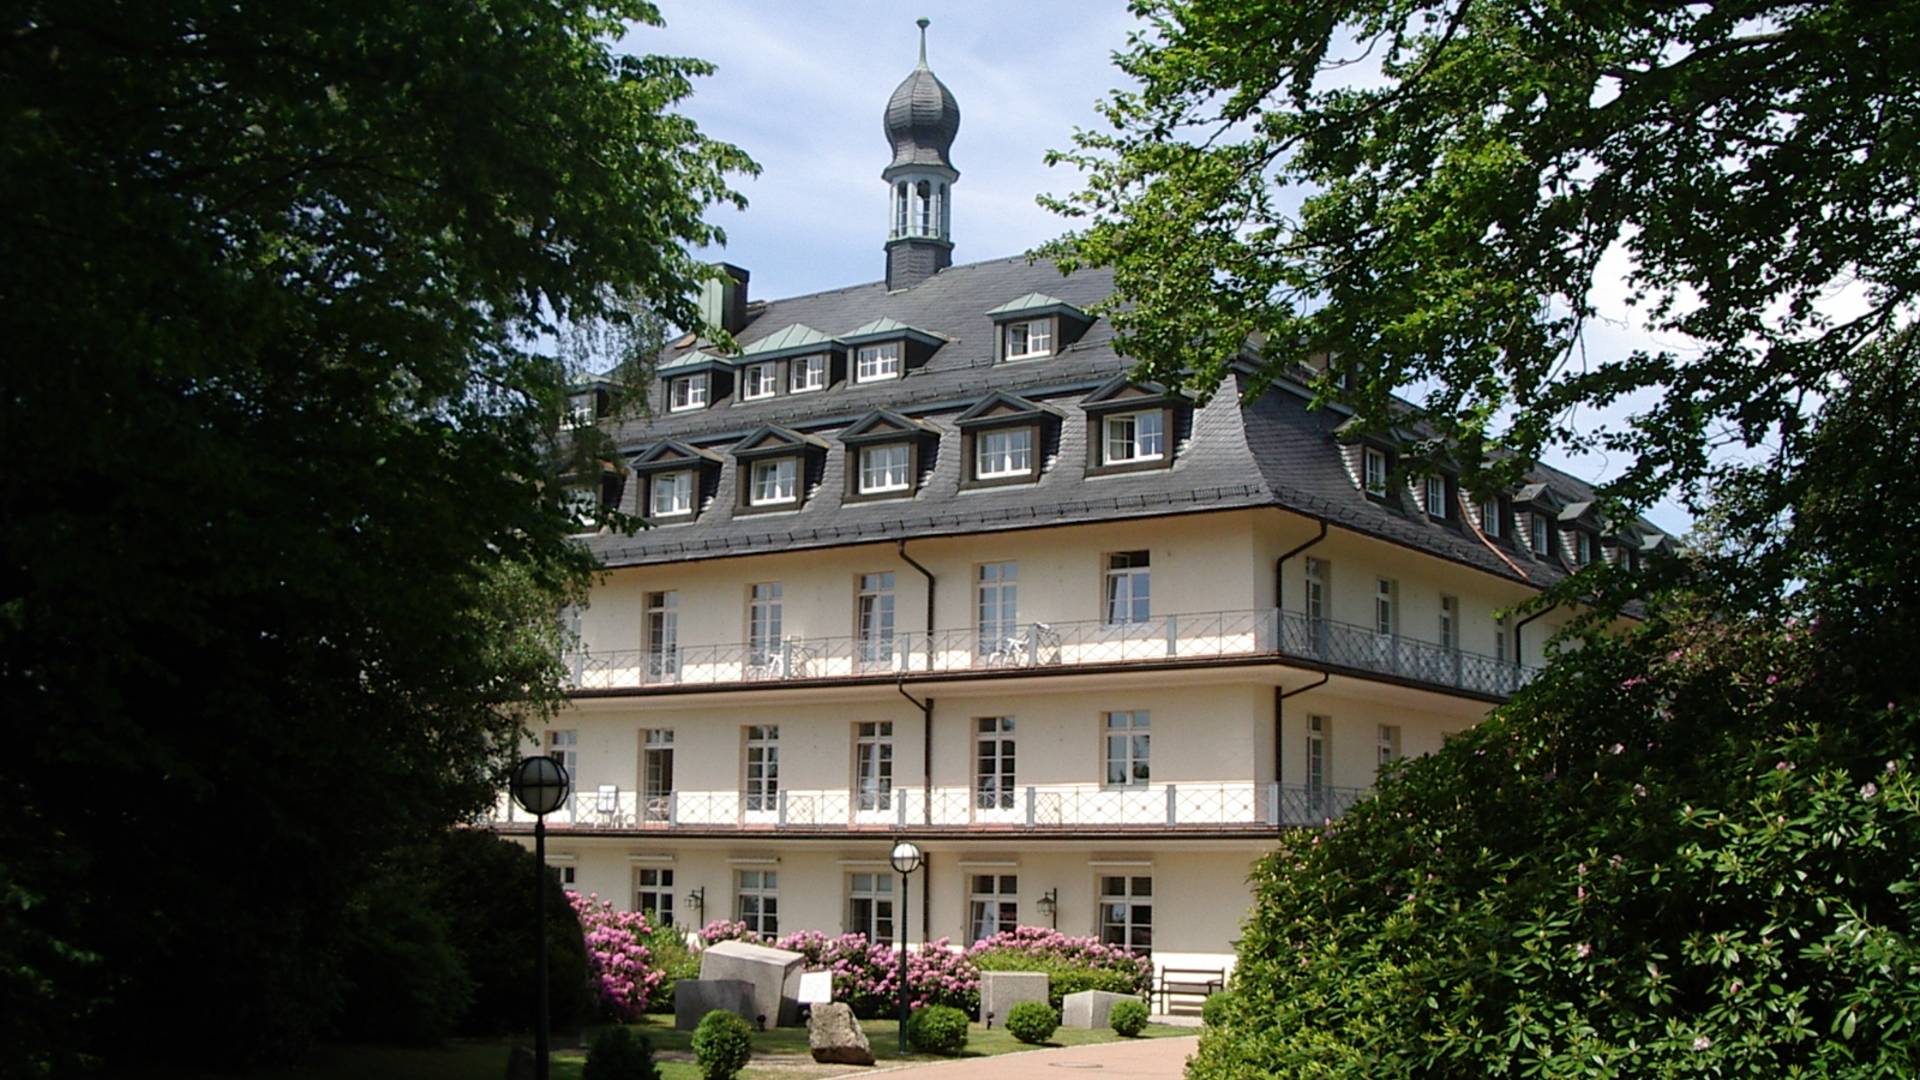 Здоровье и нега для двоих - программа отдыха и реабилитации на курорте баден-баден в германии - medhaus, germany